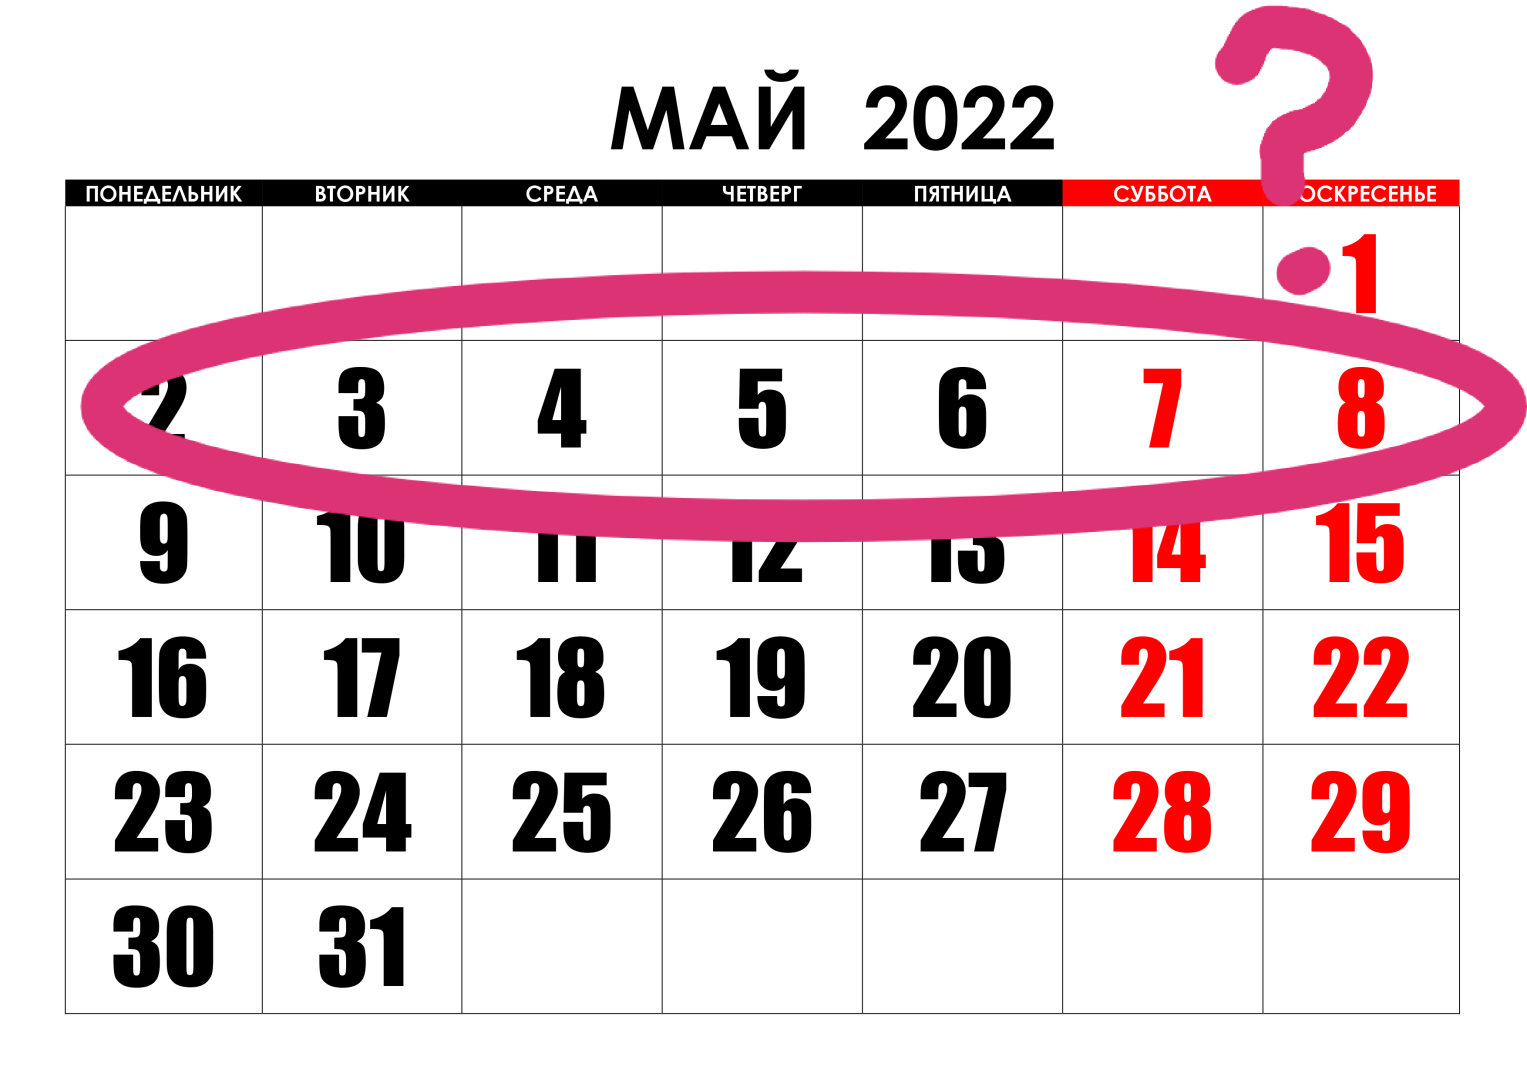 Как отдыхаем на майские праздники выходные дни. Майские праздники в 2022 году. Праздничные дни в мае 2022. Календарь праздников на май. Майские выходные в 2022 году.